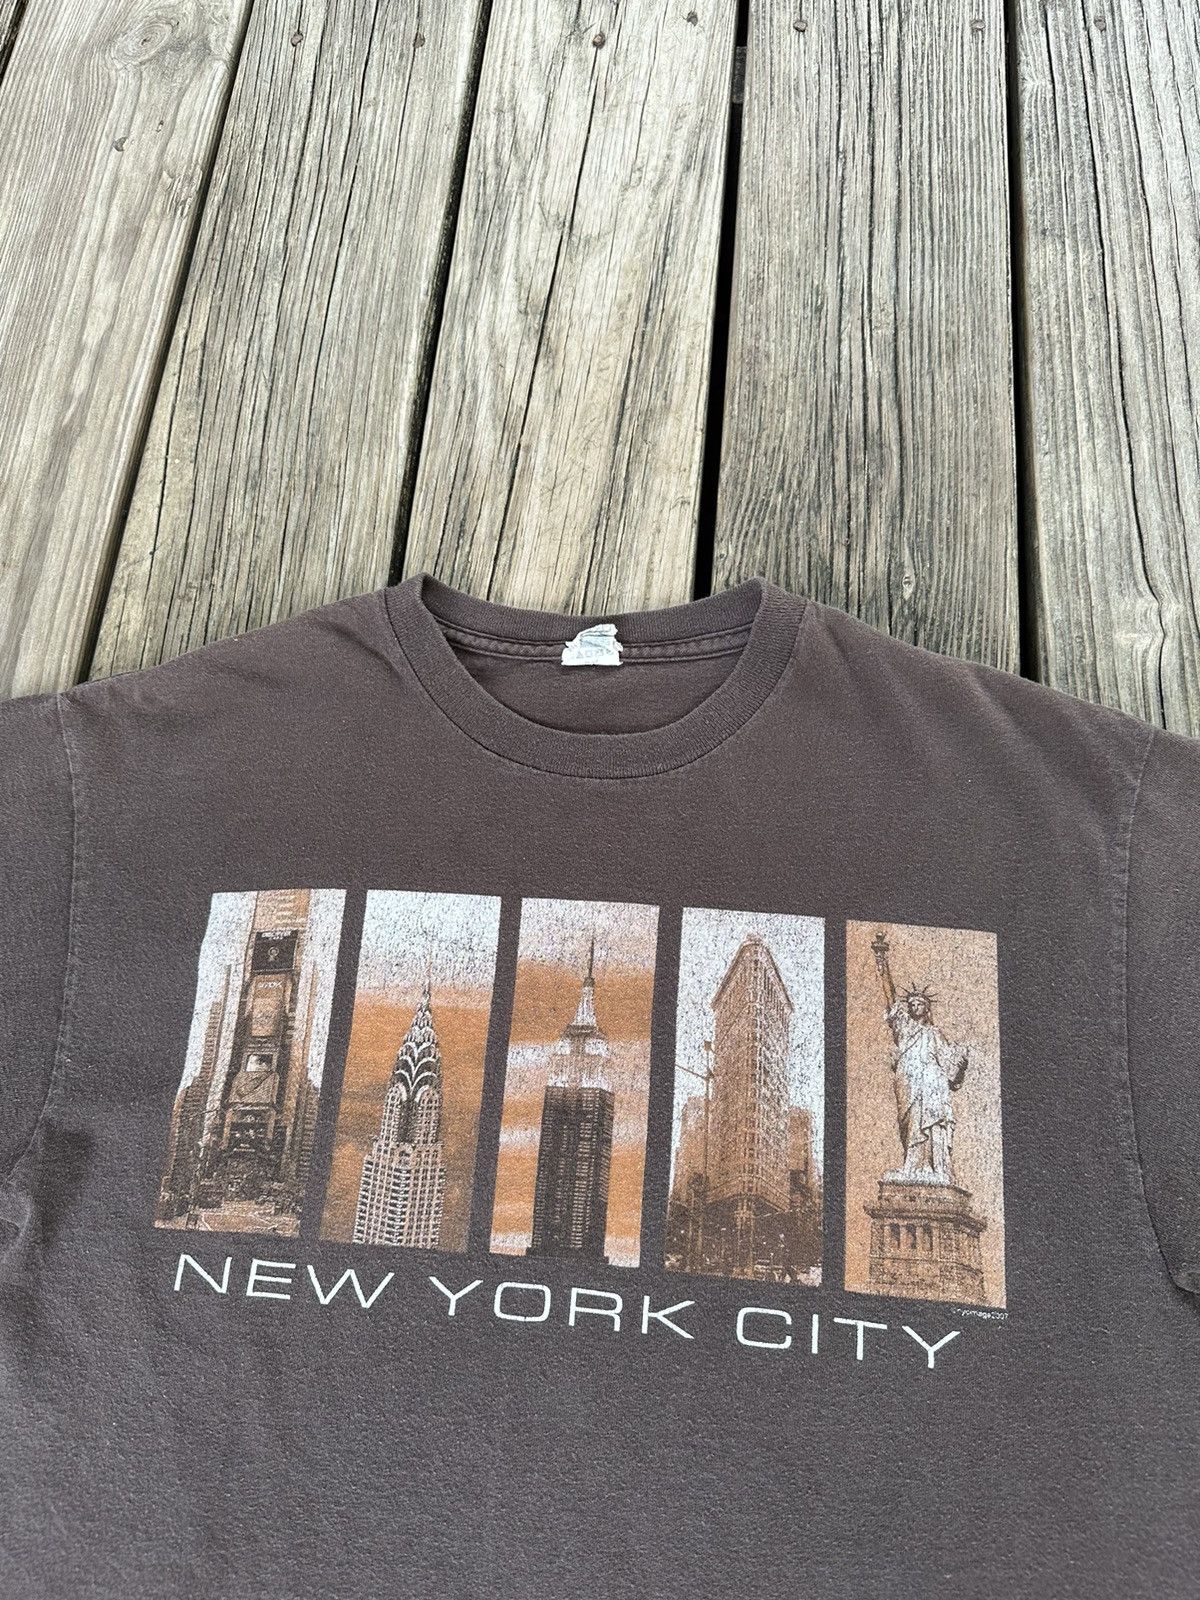 Delta 2007 New York City Shirt Size US M / EU 48-50 / 2 - 3 Thumbnail